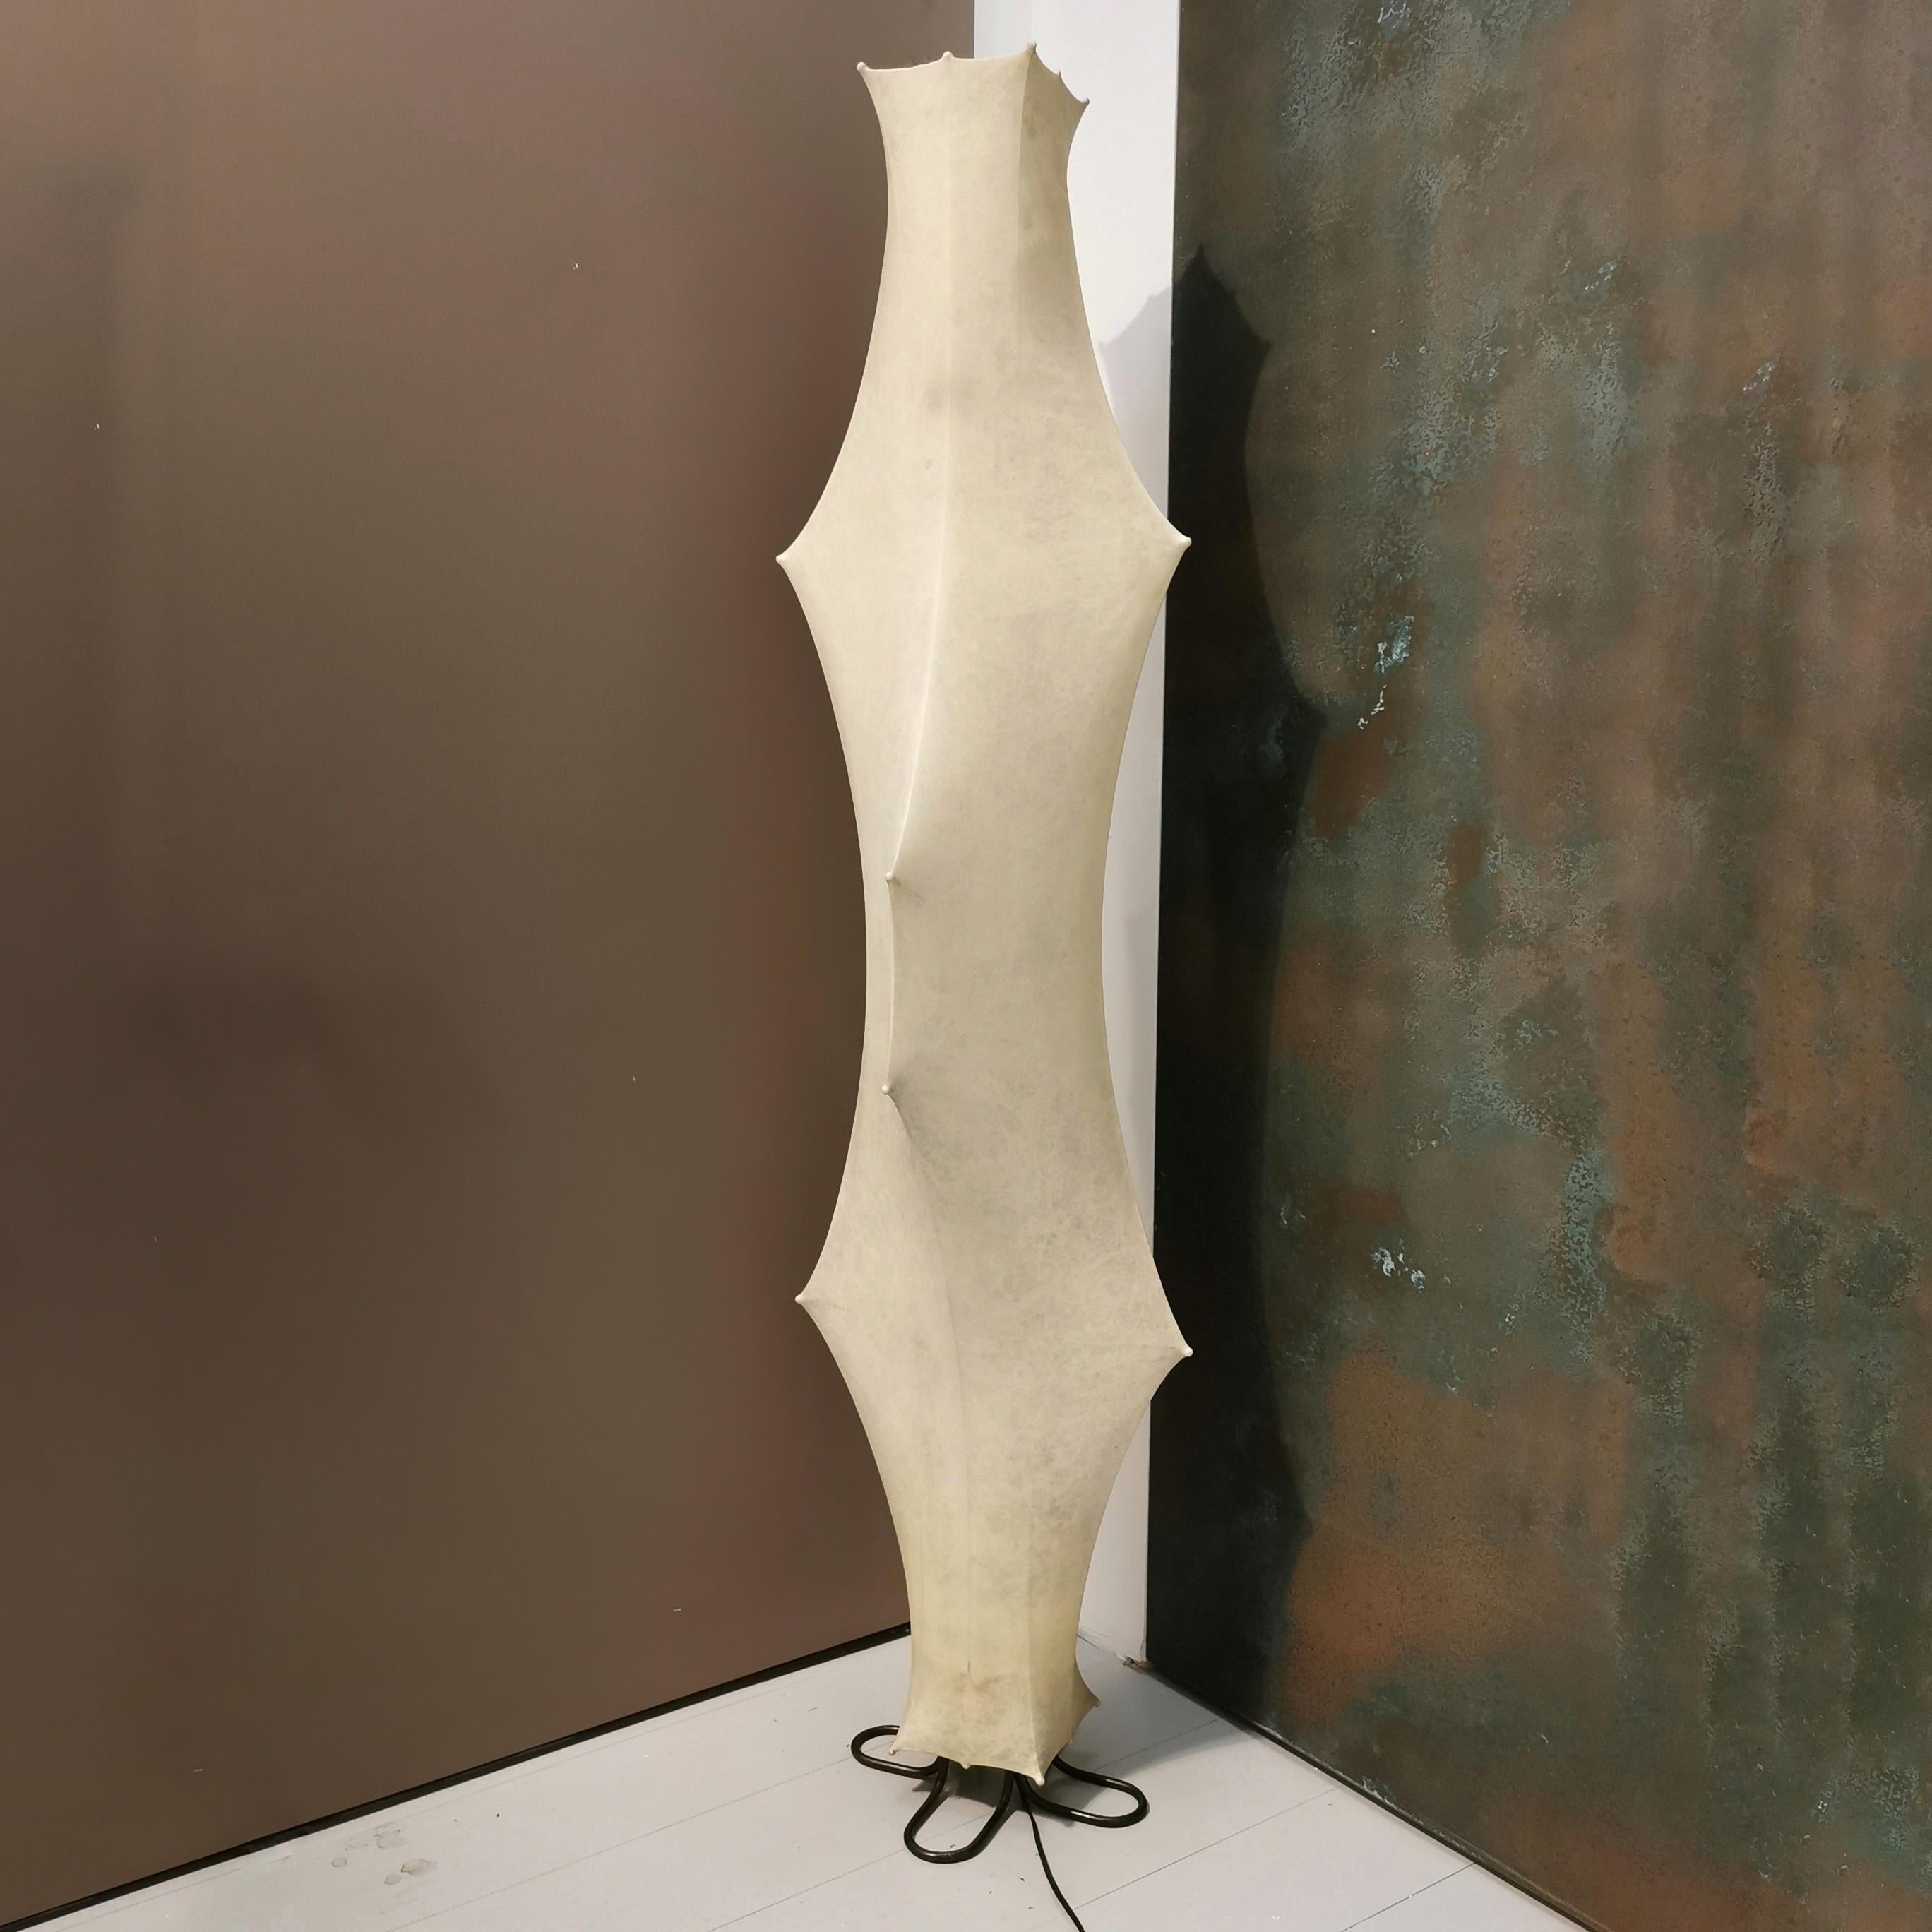 Flos Fantasma Stehleuchte von Tobia Scarpa, Italien, 1960er Jahre
Diese vom Meisterdesigner Tobia Scarpa entworfene Stehleuchte  sieht aus wie ein funktionales Kunstwerk. Ihre markante Silhouette erstrahlt in einem diffusen Licht, das beleuchtet,